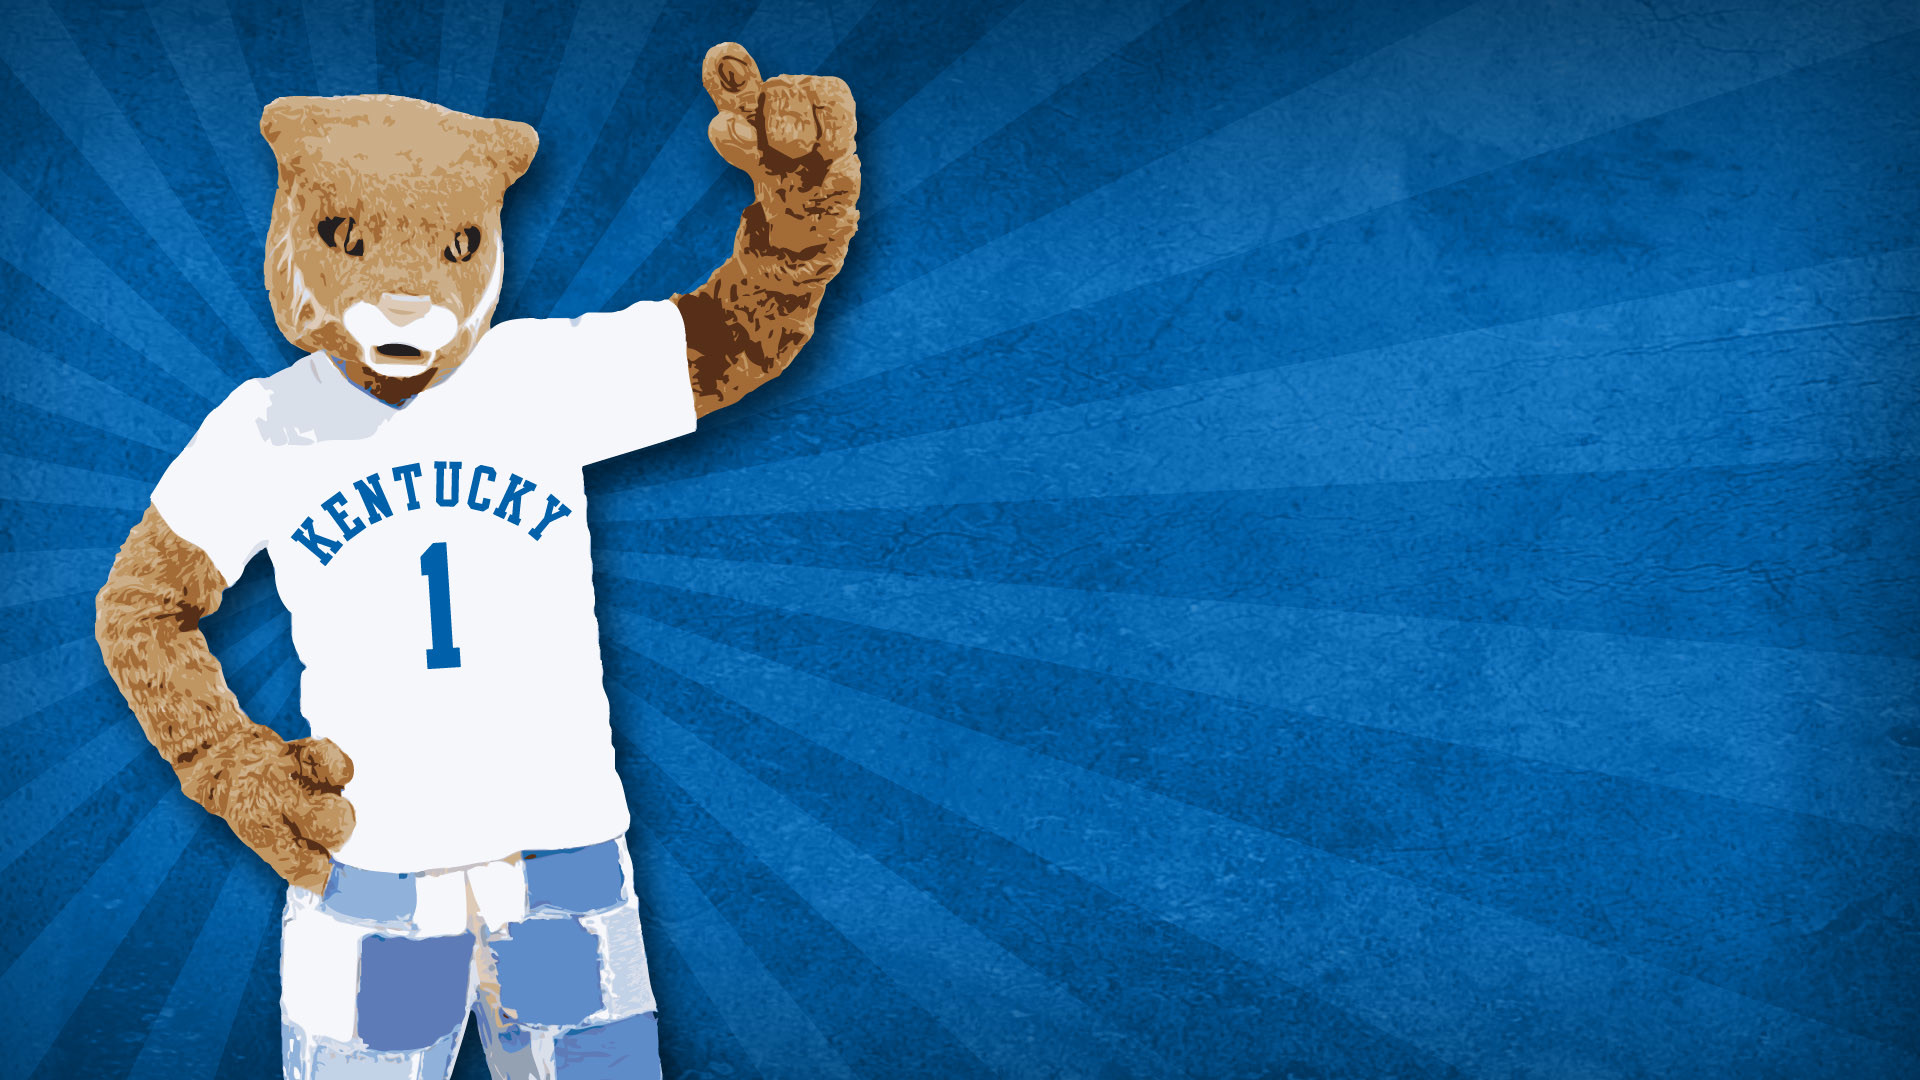 1920x1080 ... Kentucky desktop wallpaper featuring the Wildcats mascot. Get it now!